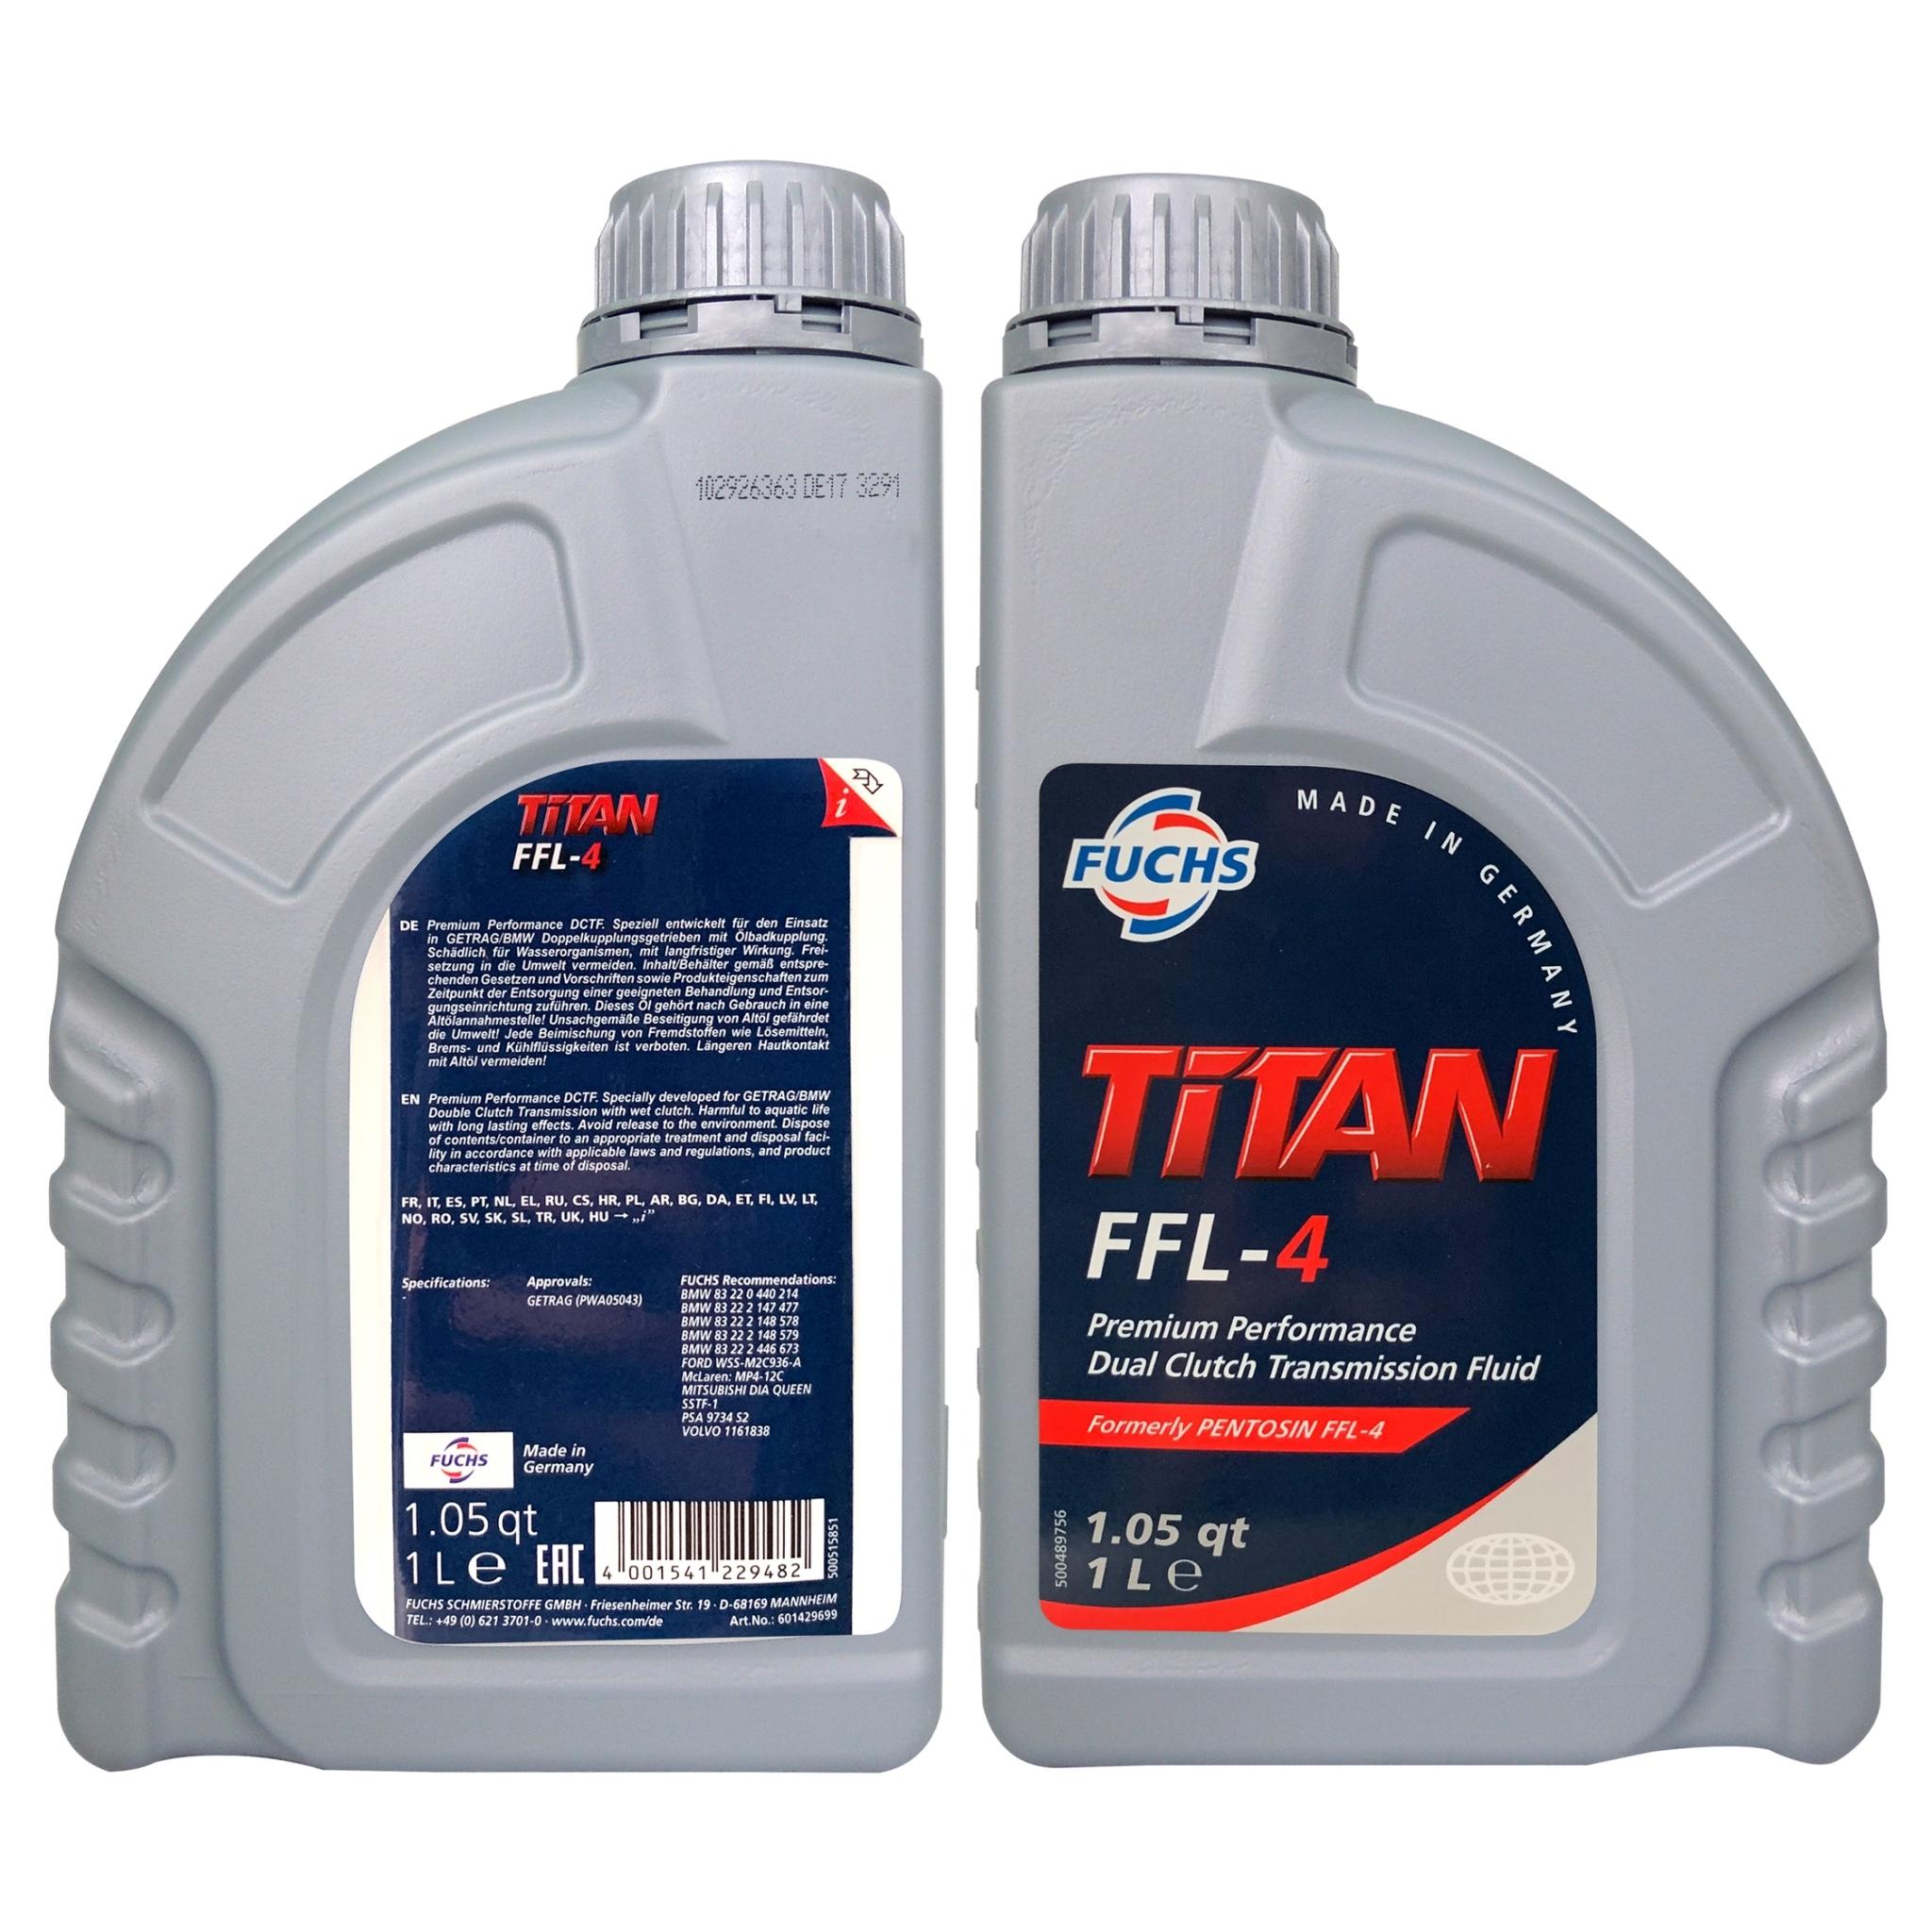 Fuchs TiTAN FFL-4 雙離合變速箱油 同Pentosin FFL-4